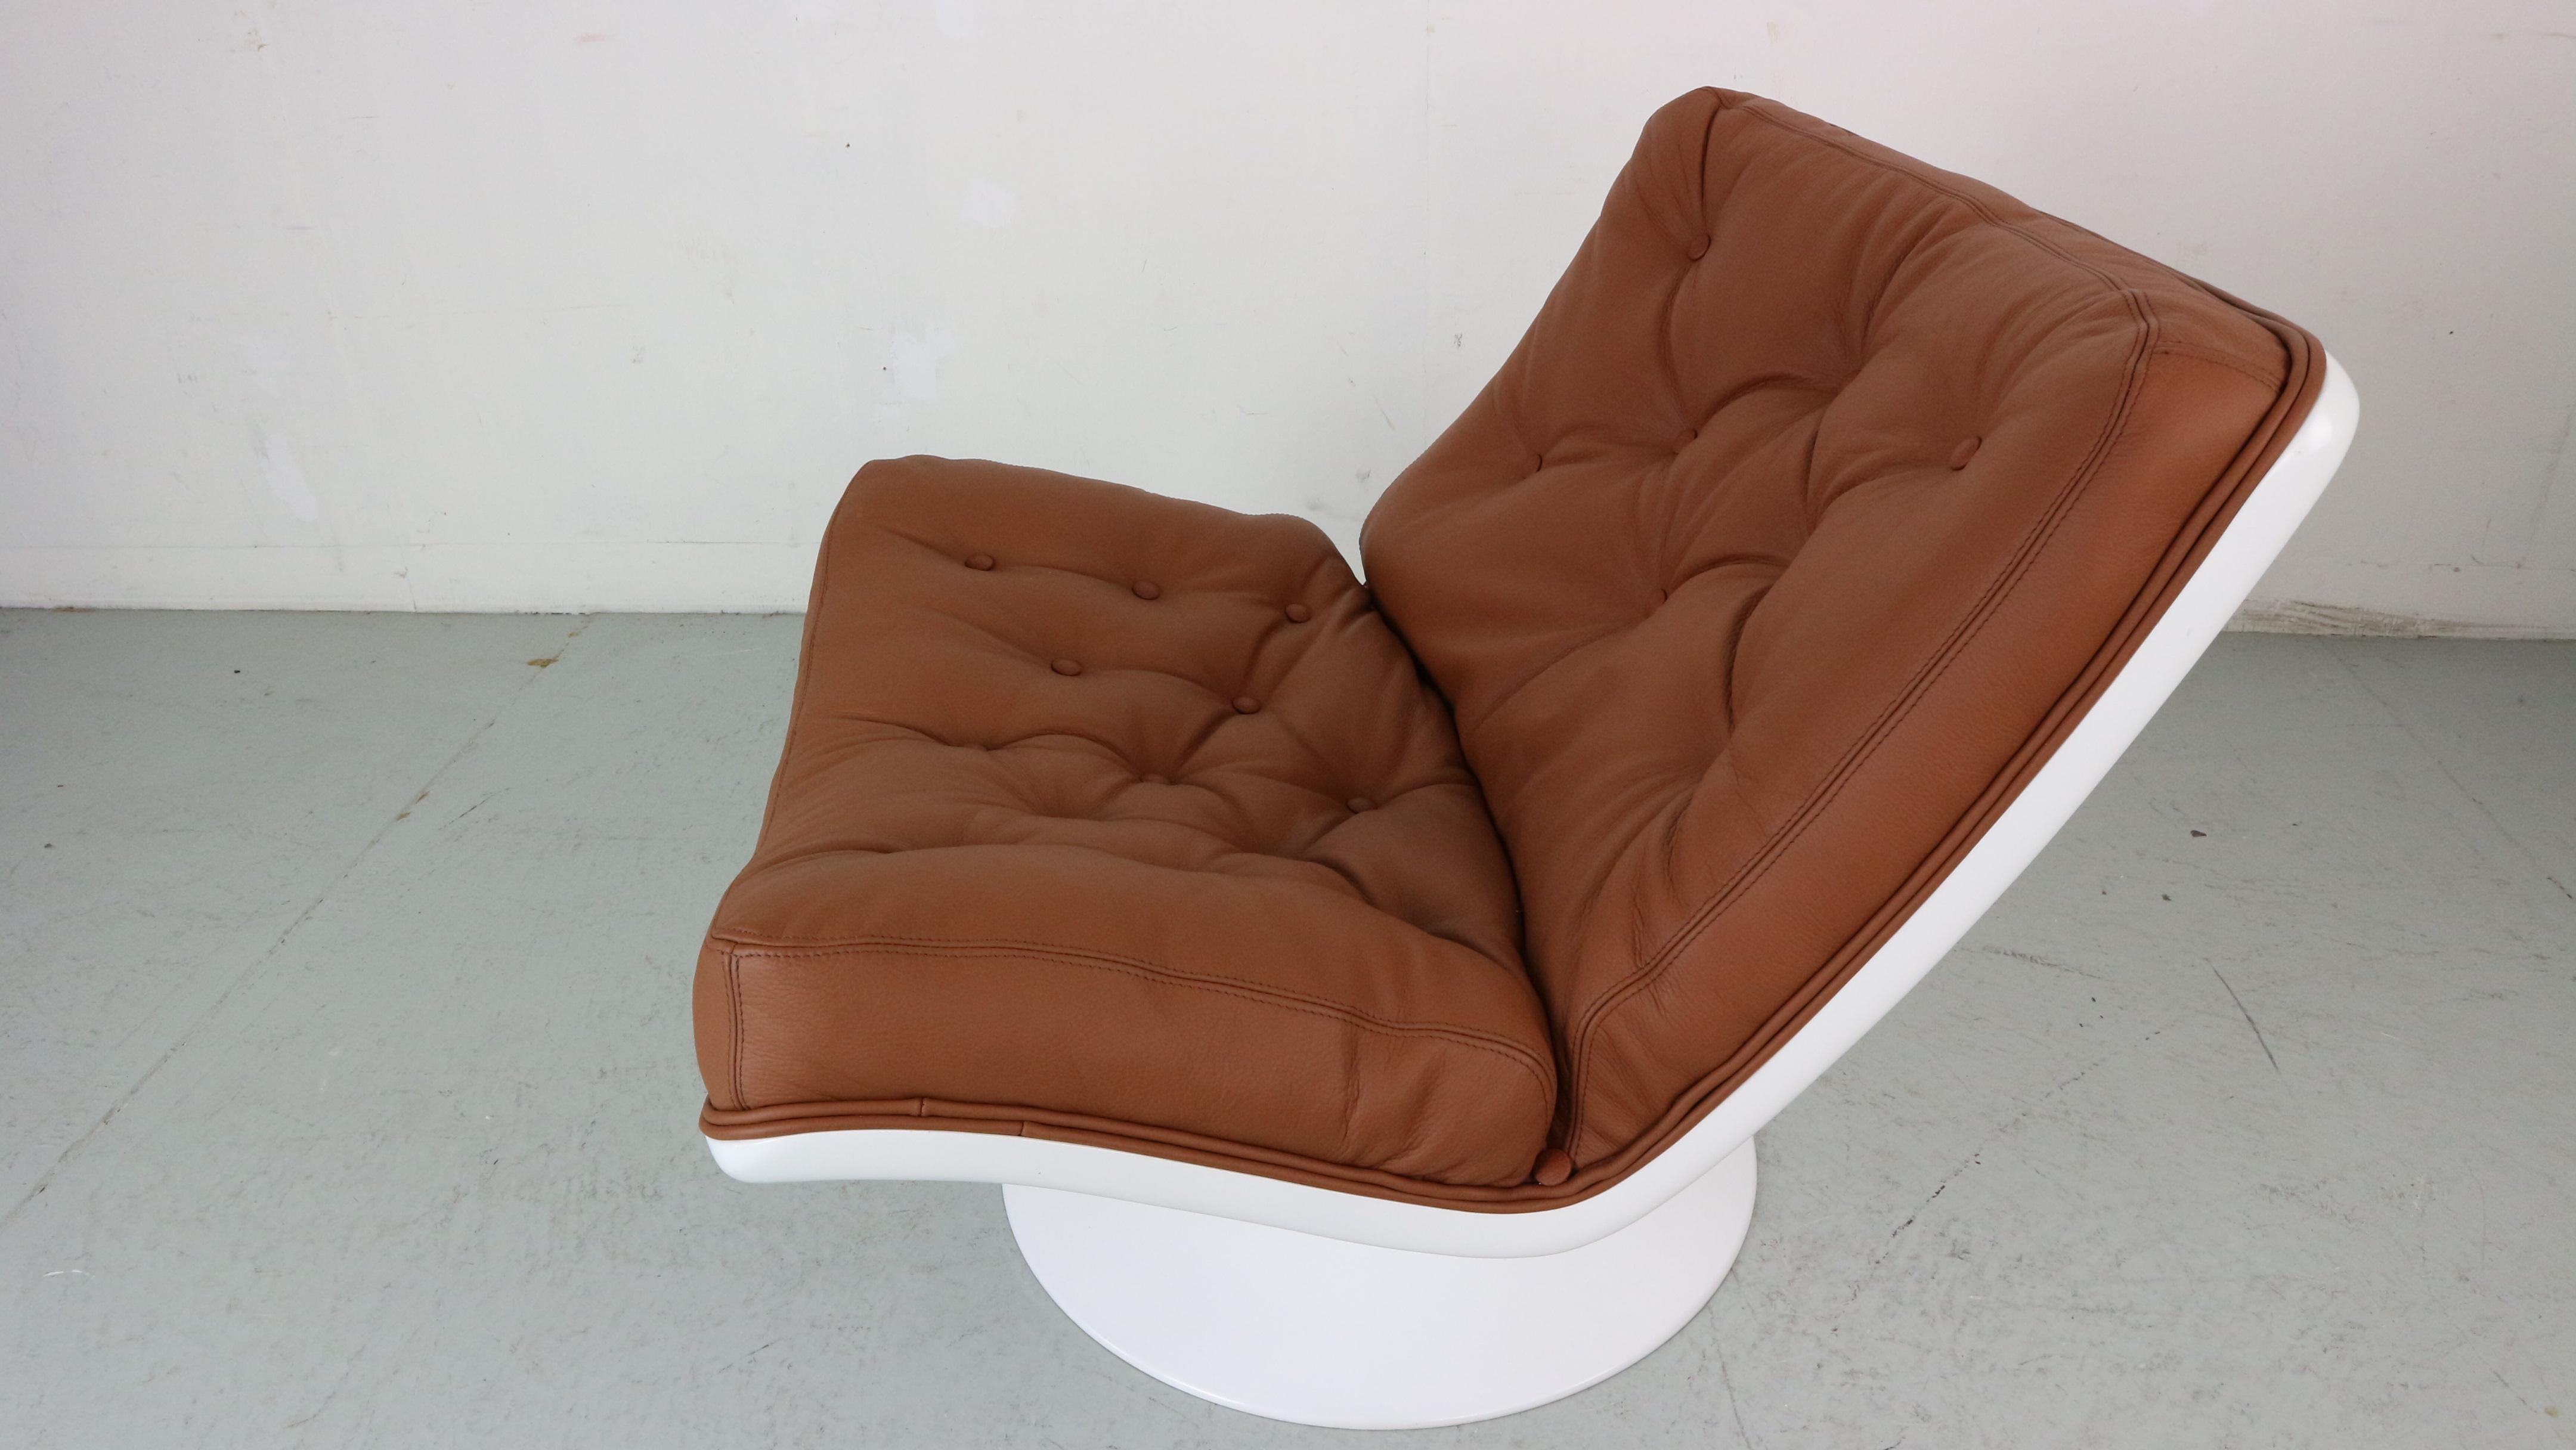 Chaise très décorative conçue en 1968 par Geoffrey Harcourt pour la société néerlandaise Artifort.

La coque en fibre de verre (1ère édition ?) est encore en très bon état et d'origine. Il n'y a qu'une légère usure sur la base au niveau du sol, avec